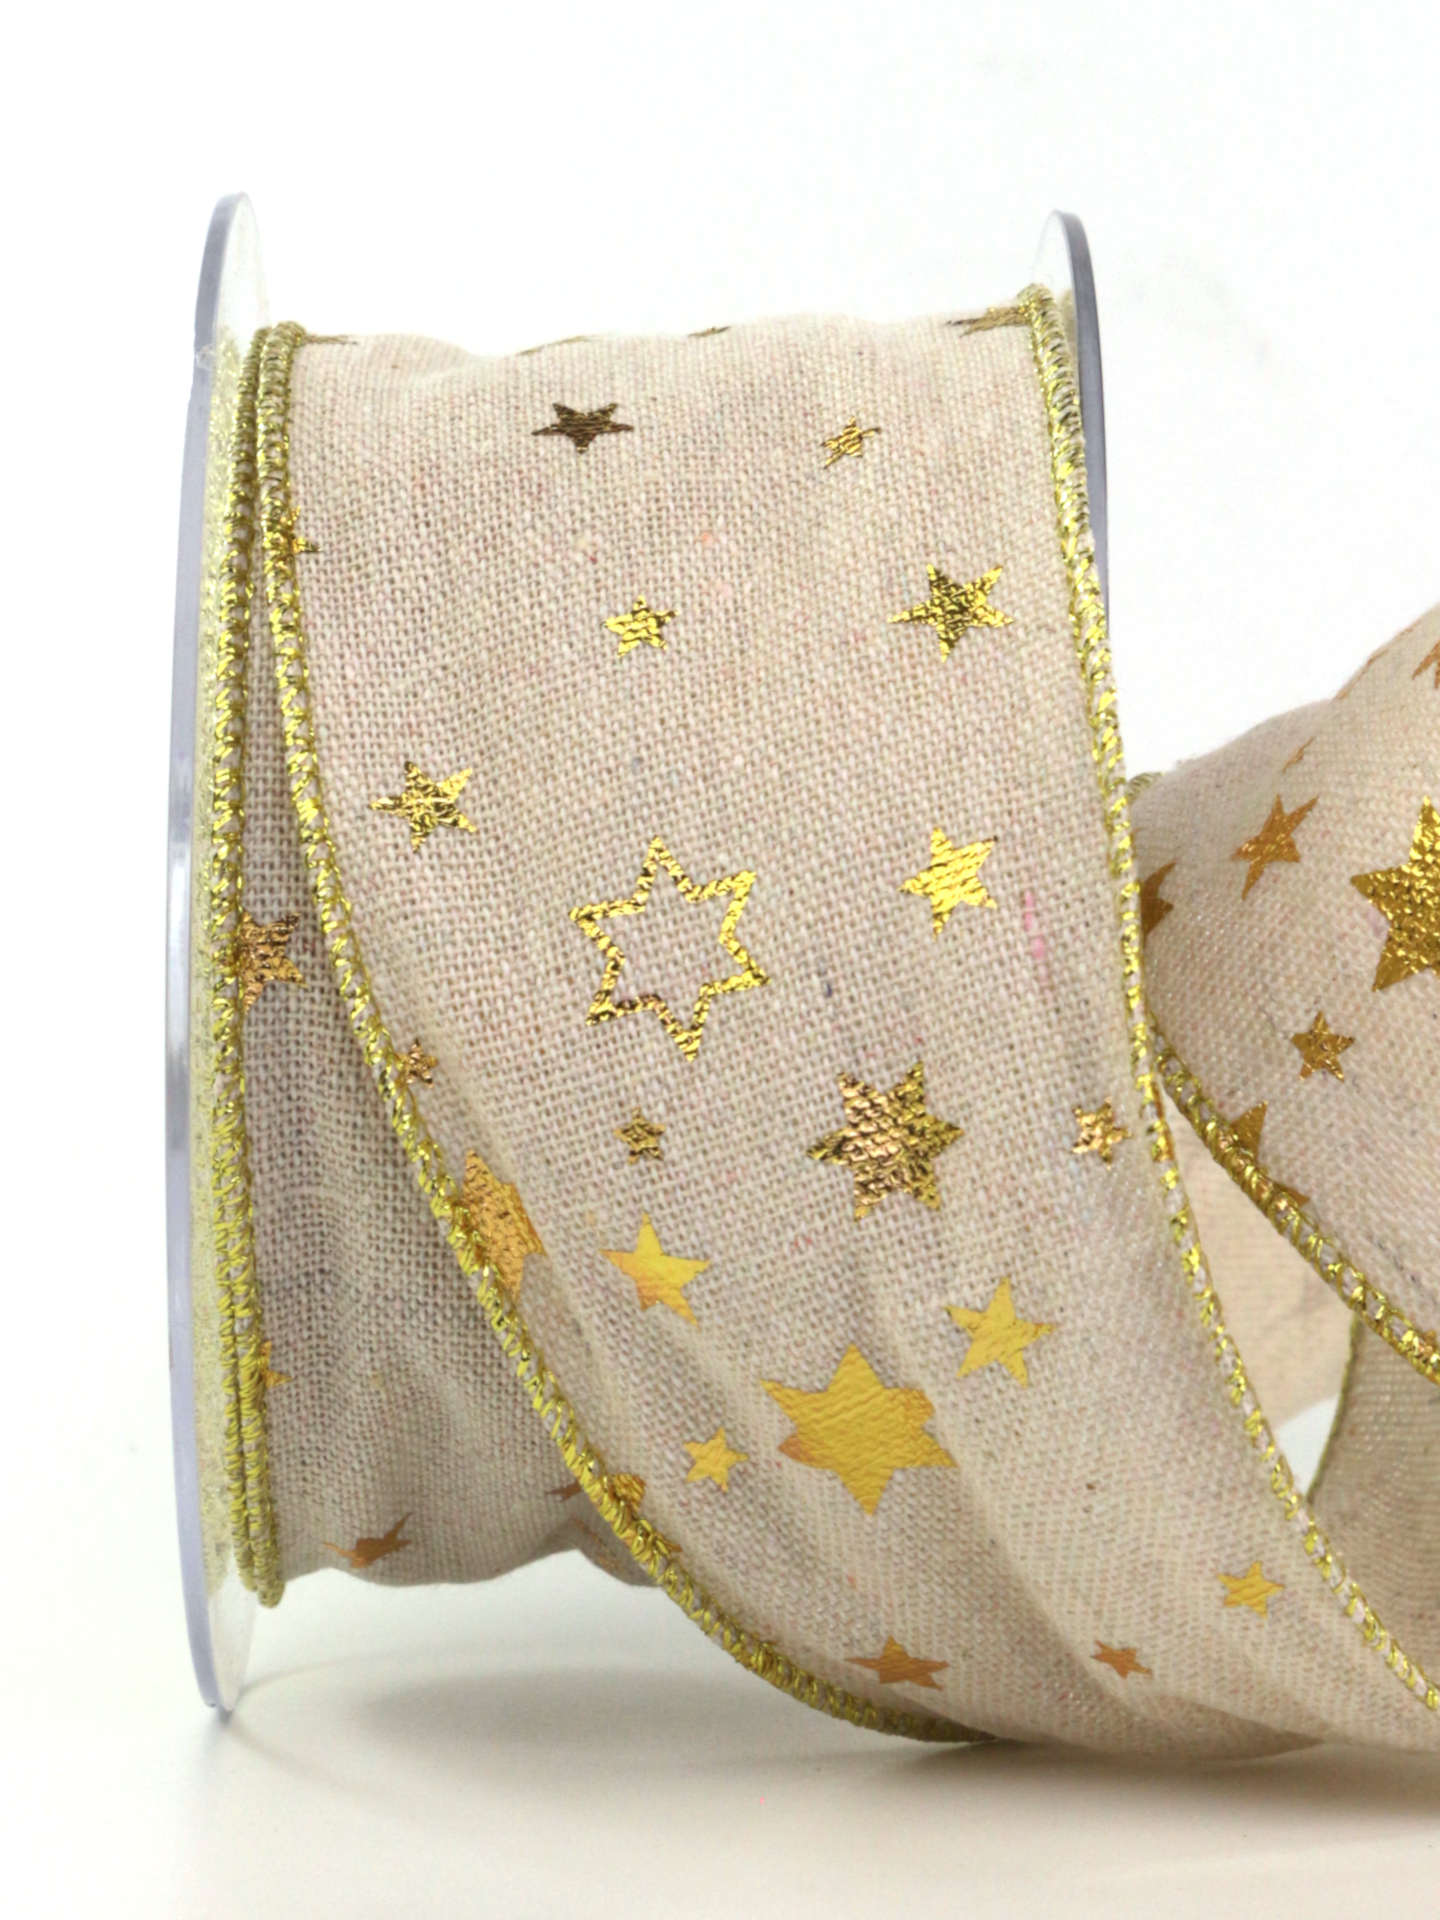 Juteband mit Sternen, gold, 65 mm breit, 10 m Rolle - geschenkband-weihnachten, weihnachtsbaender